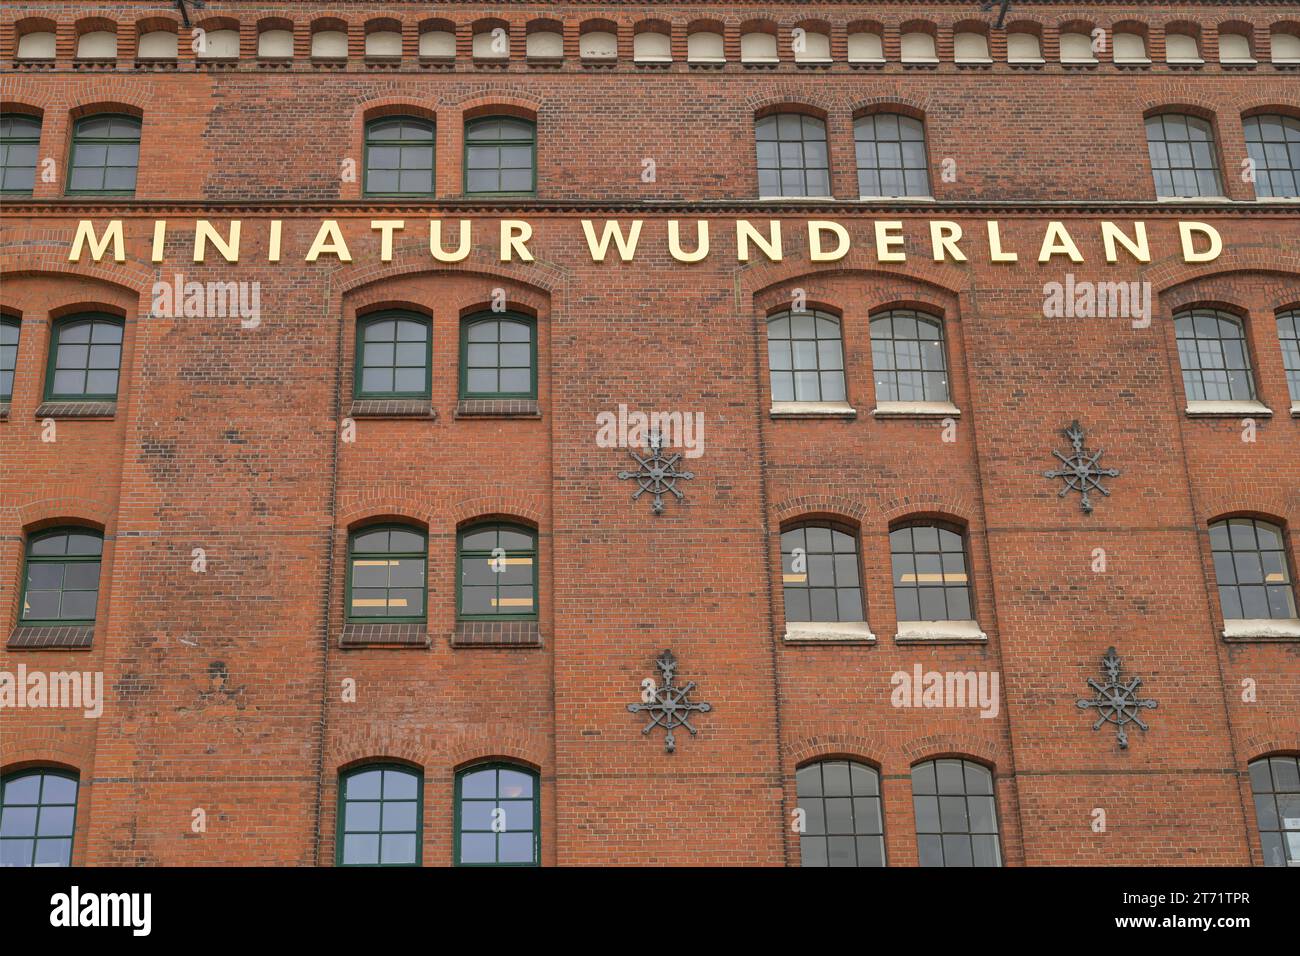 Modelleisenbahnanlage Miniatur Wunderland, Kehrwieder, Speicherstadt, Hamburg, Deutschland Stock Photo